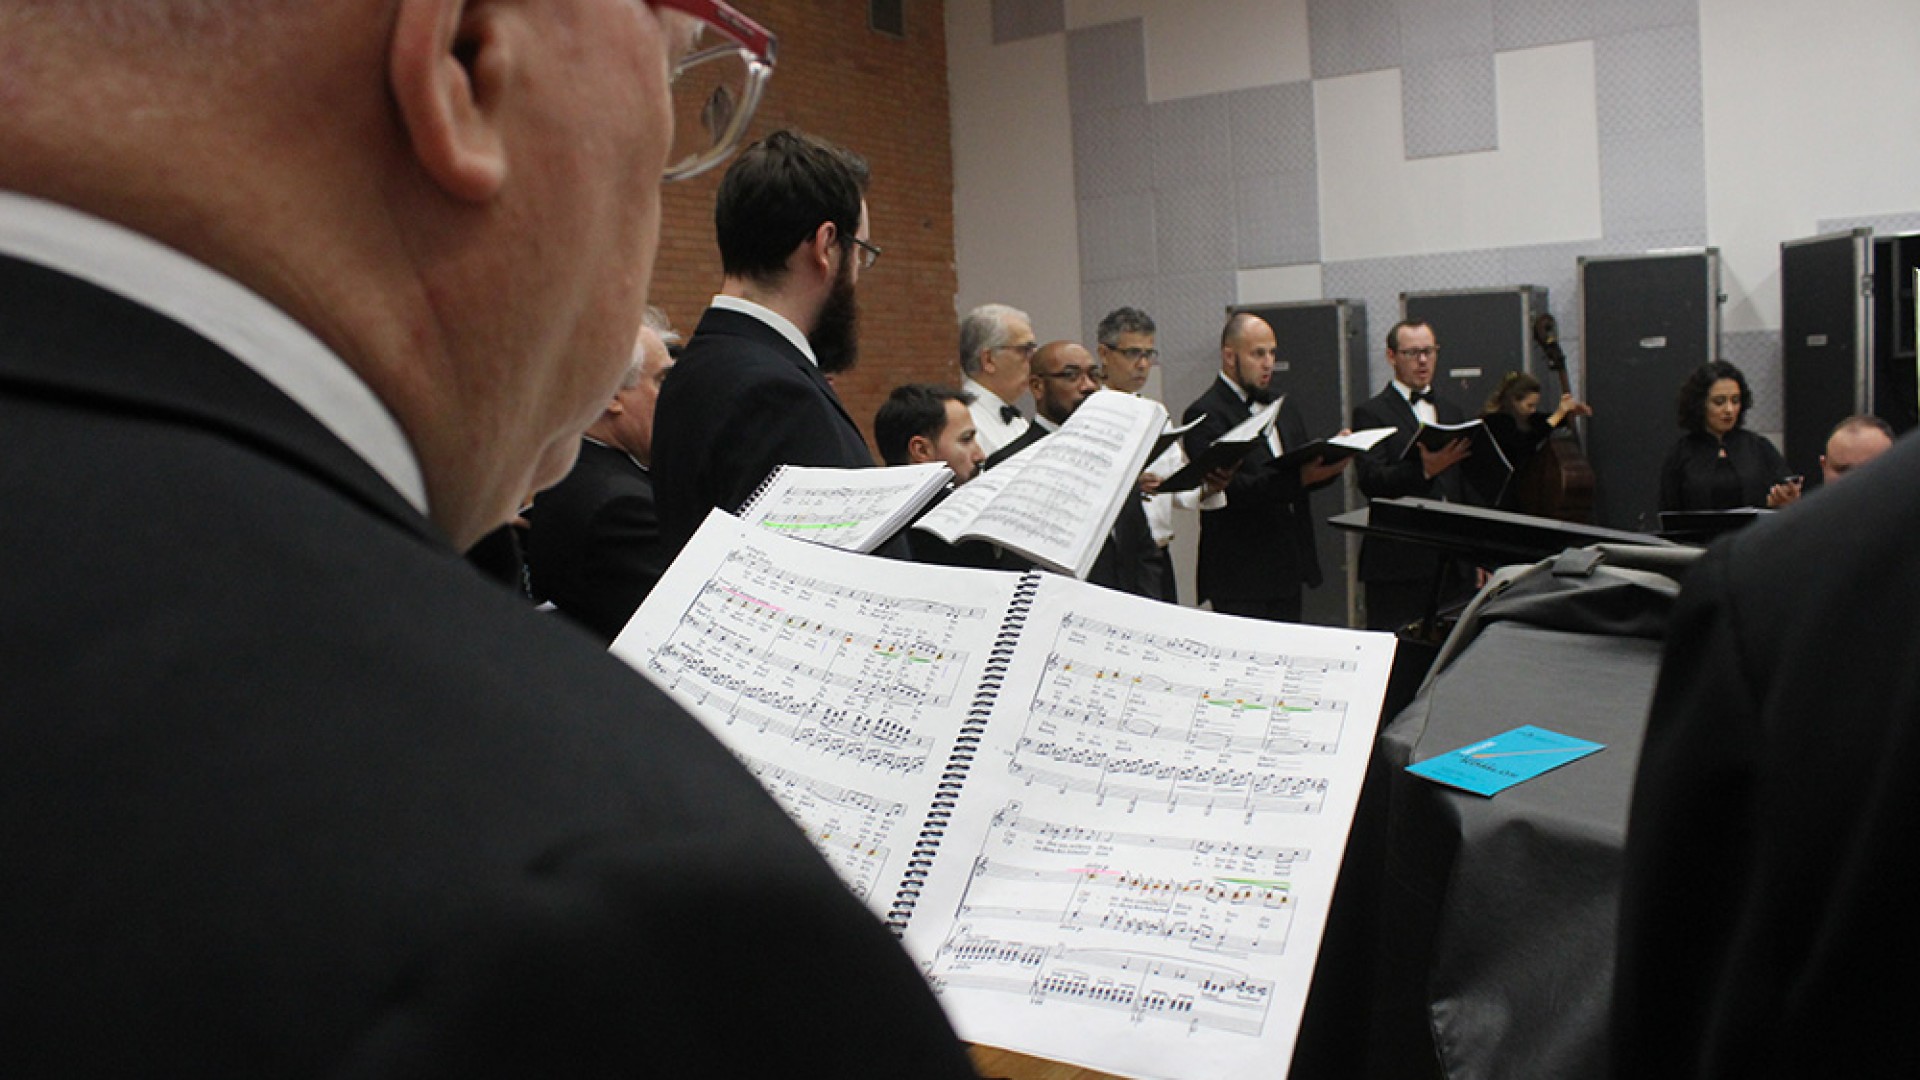 Ospa e seu Coro Sinfônico apresentam o Réquiem alemão de Brahms - OSPA -  Orquestra Sinfônica de Porto Alegre